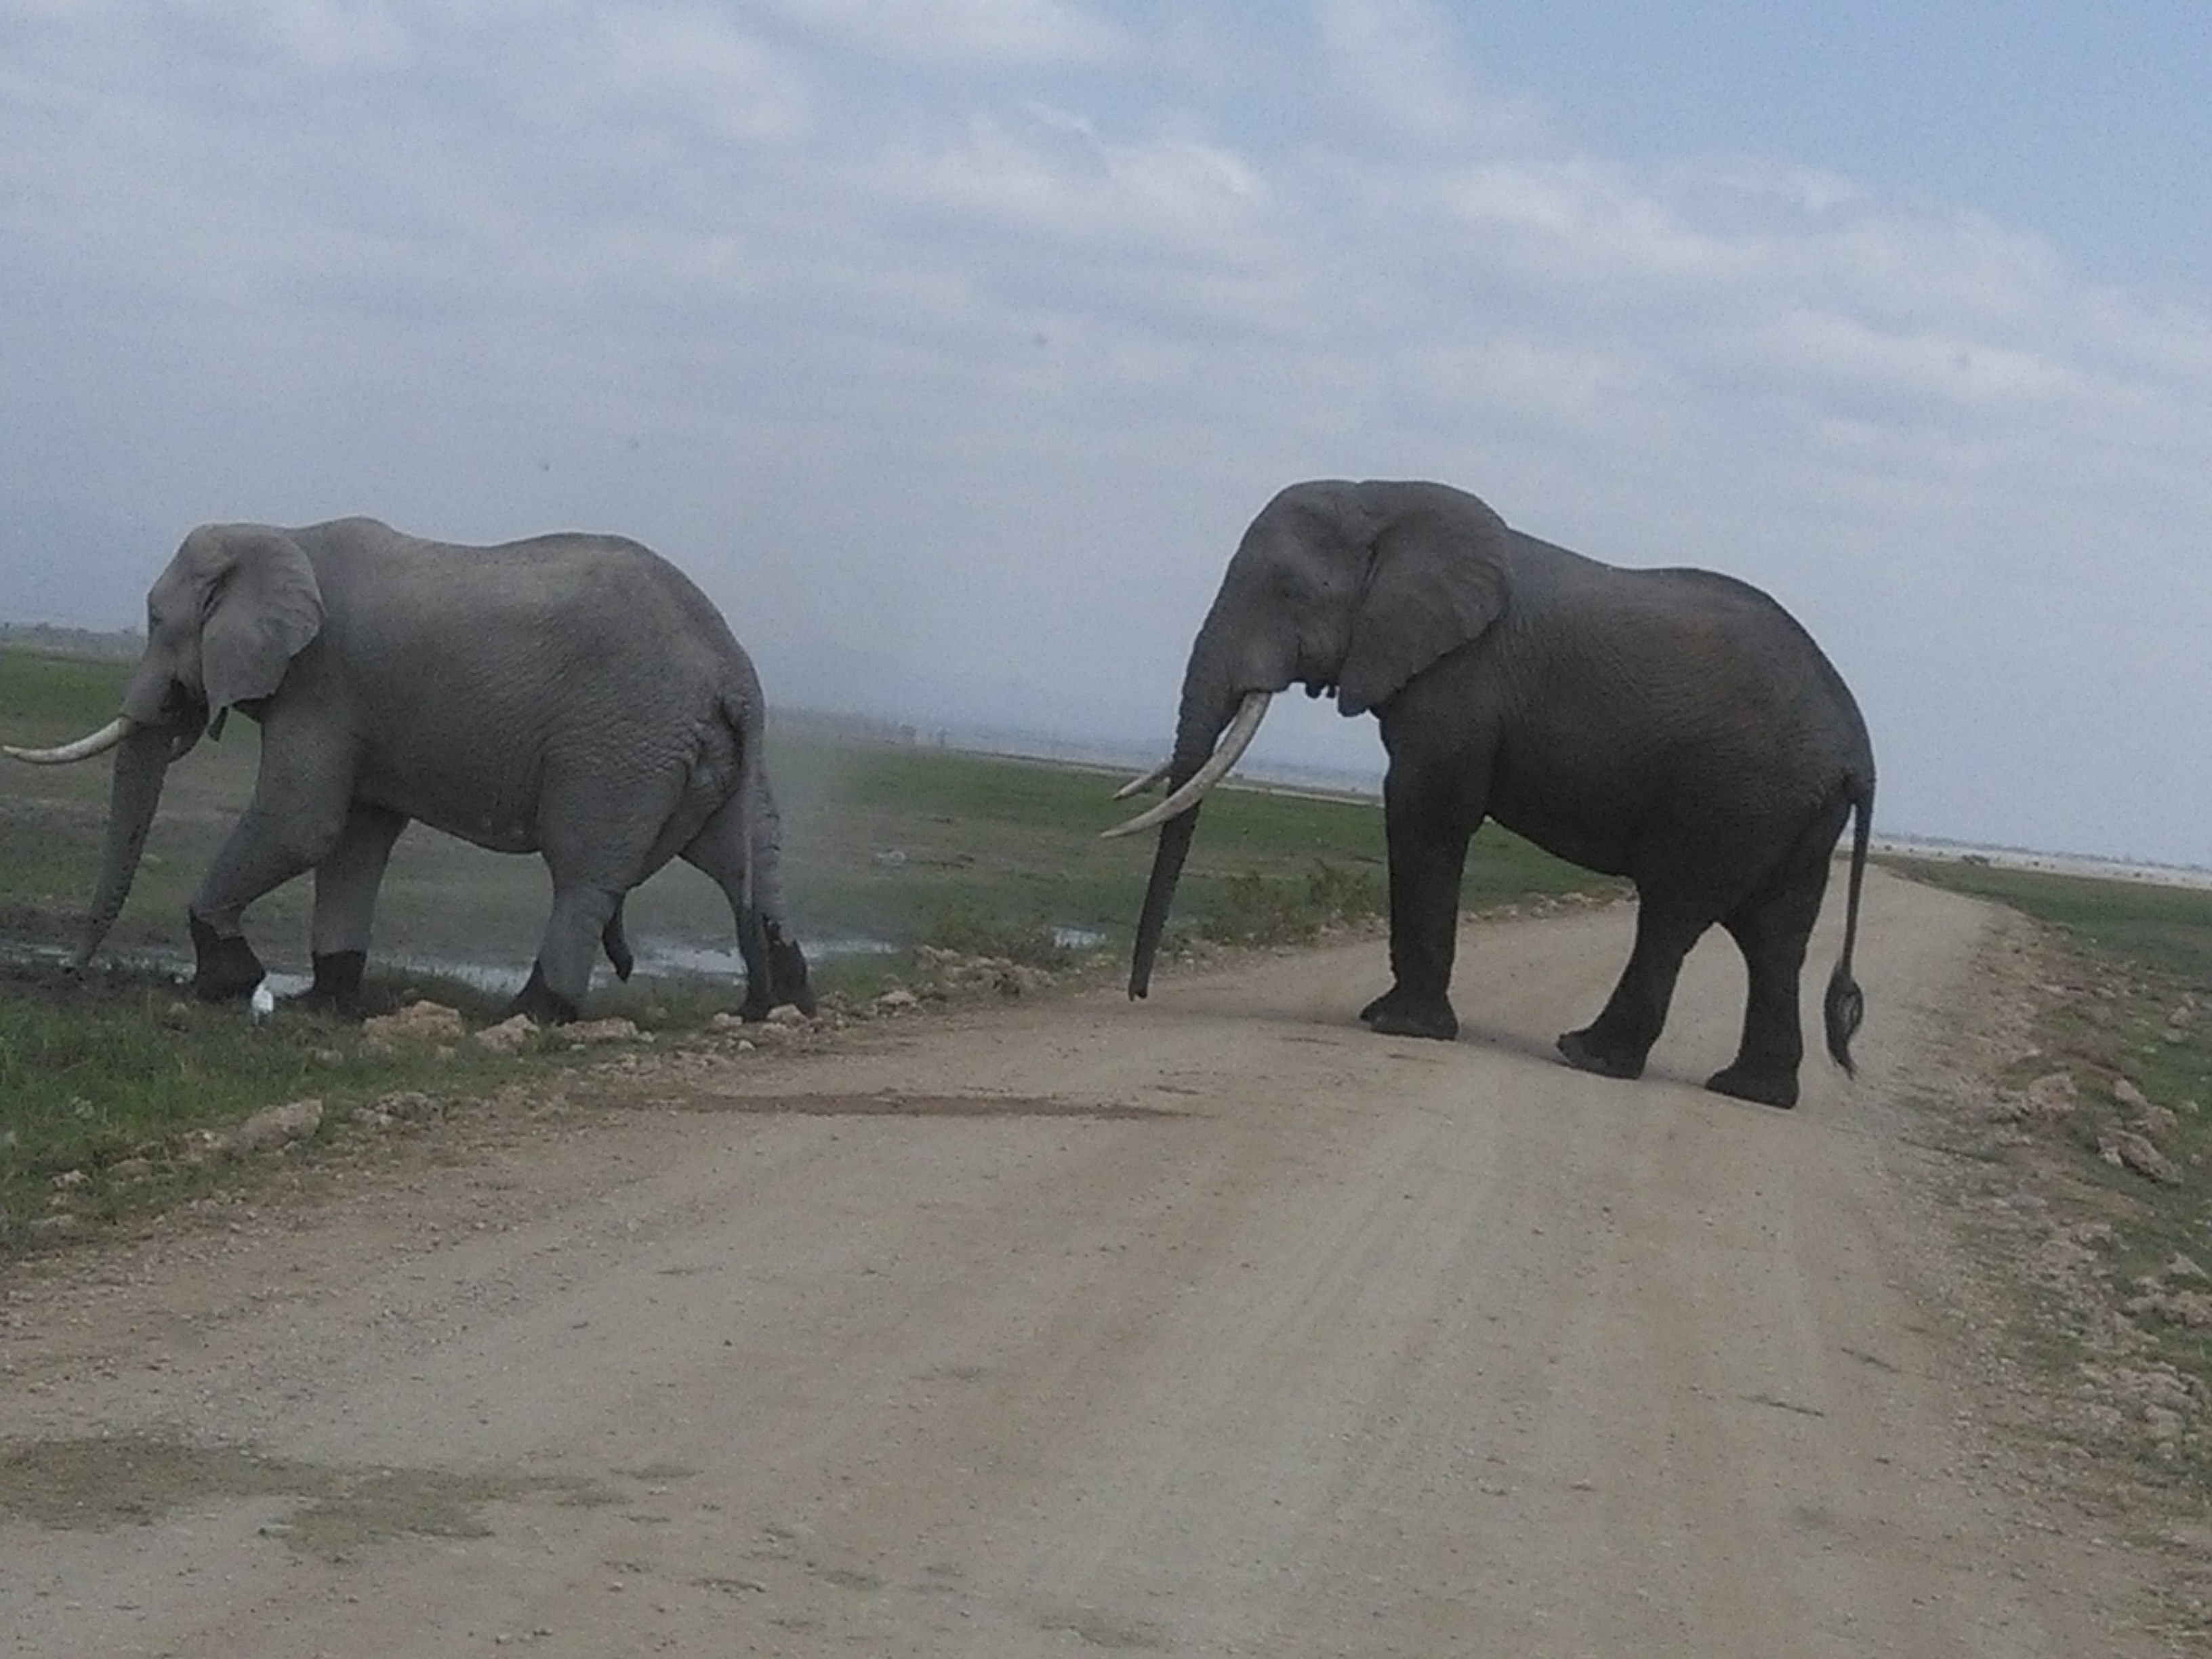 Budget Kenya Safari Tours /YHA Kenya Travel Wildlife Safaris Package.